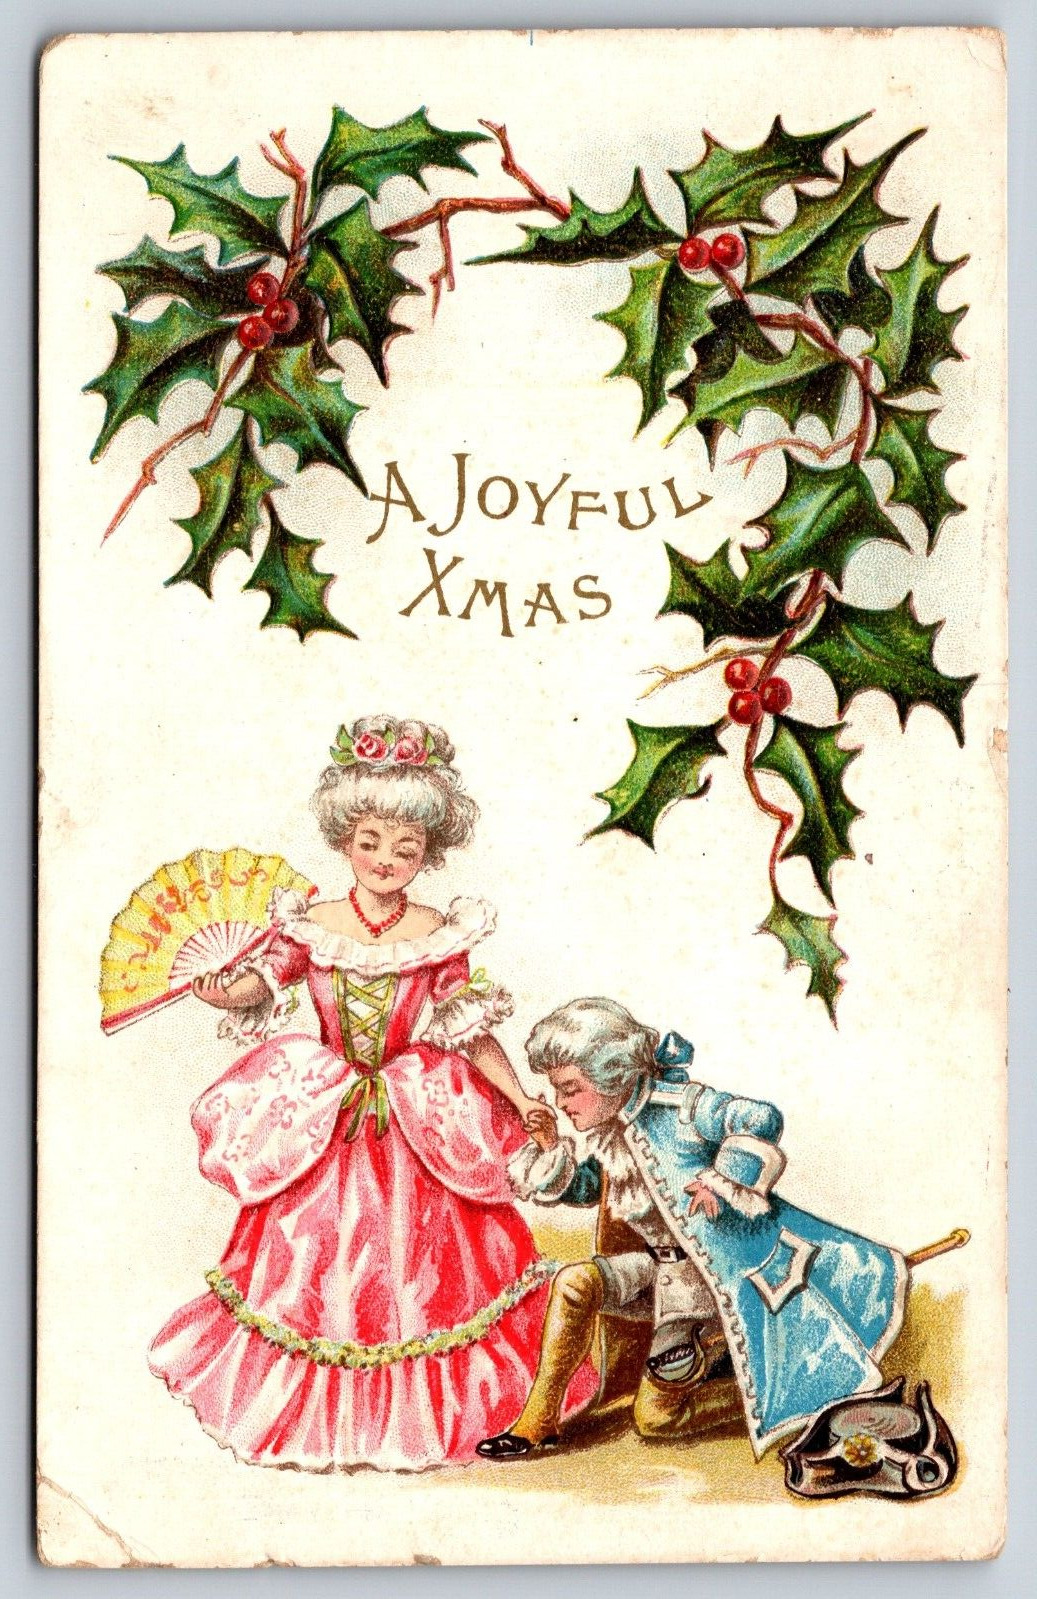 1908, A Joyful Xmas, Philadelphia, Pennsylvania Vintage Postcard